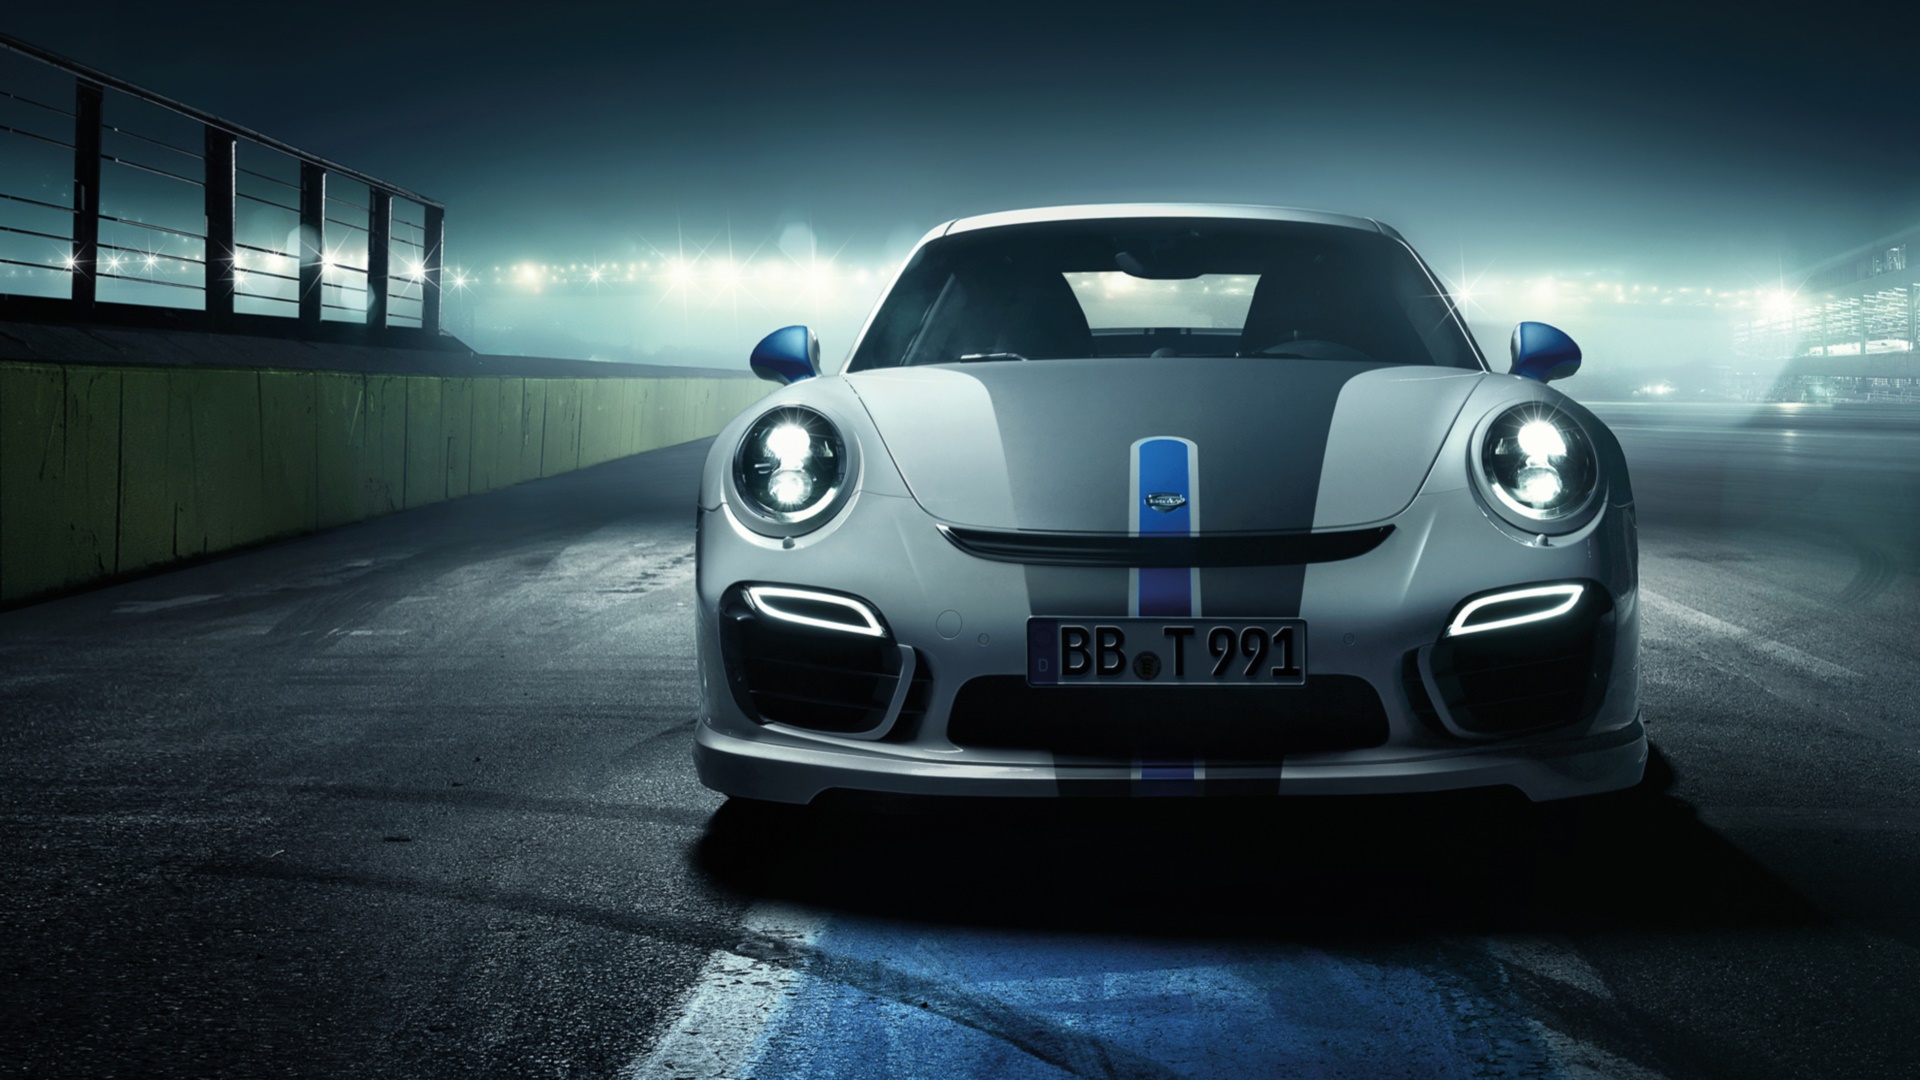 Descarga gratuita de fondo de pantalla para móvil de Porsche 911 Turbo, Porsche, Vehículos.